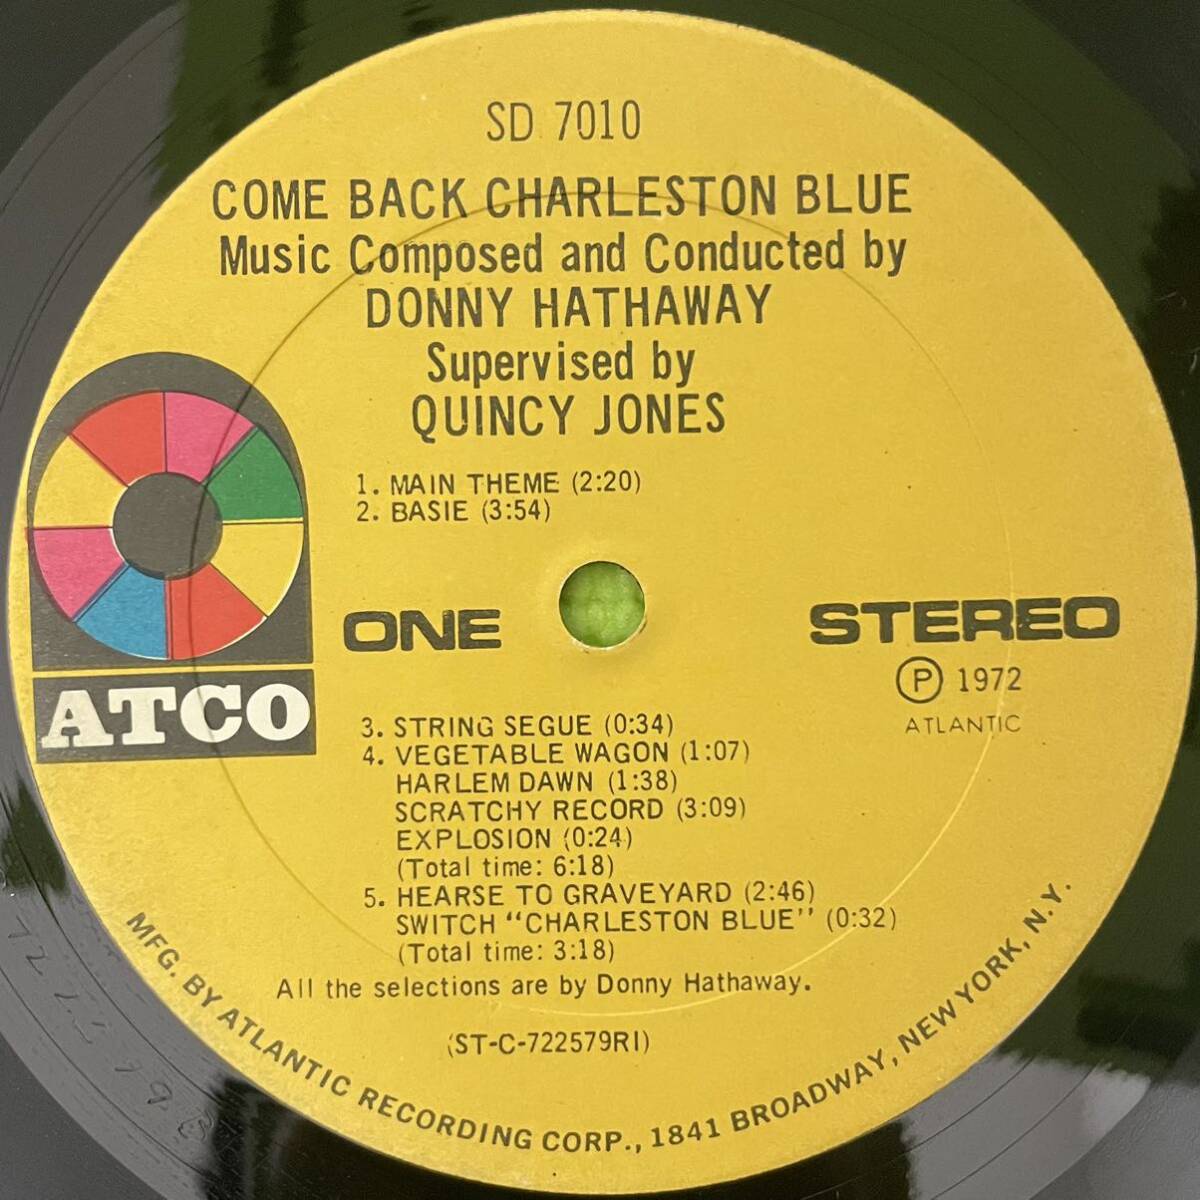 Soul jazz sampling raregroove record ソウル ジャズ サンプリング レコード O.S.T. Come Back Charleston Blue(LP) 1972の画像4